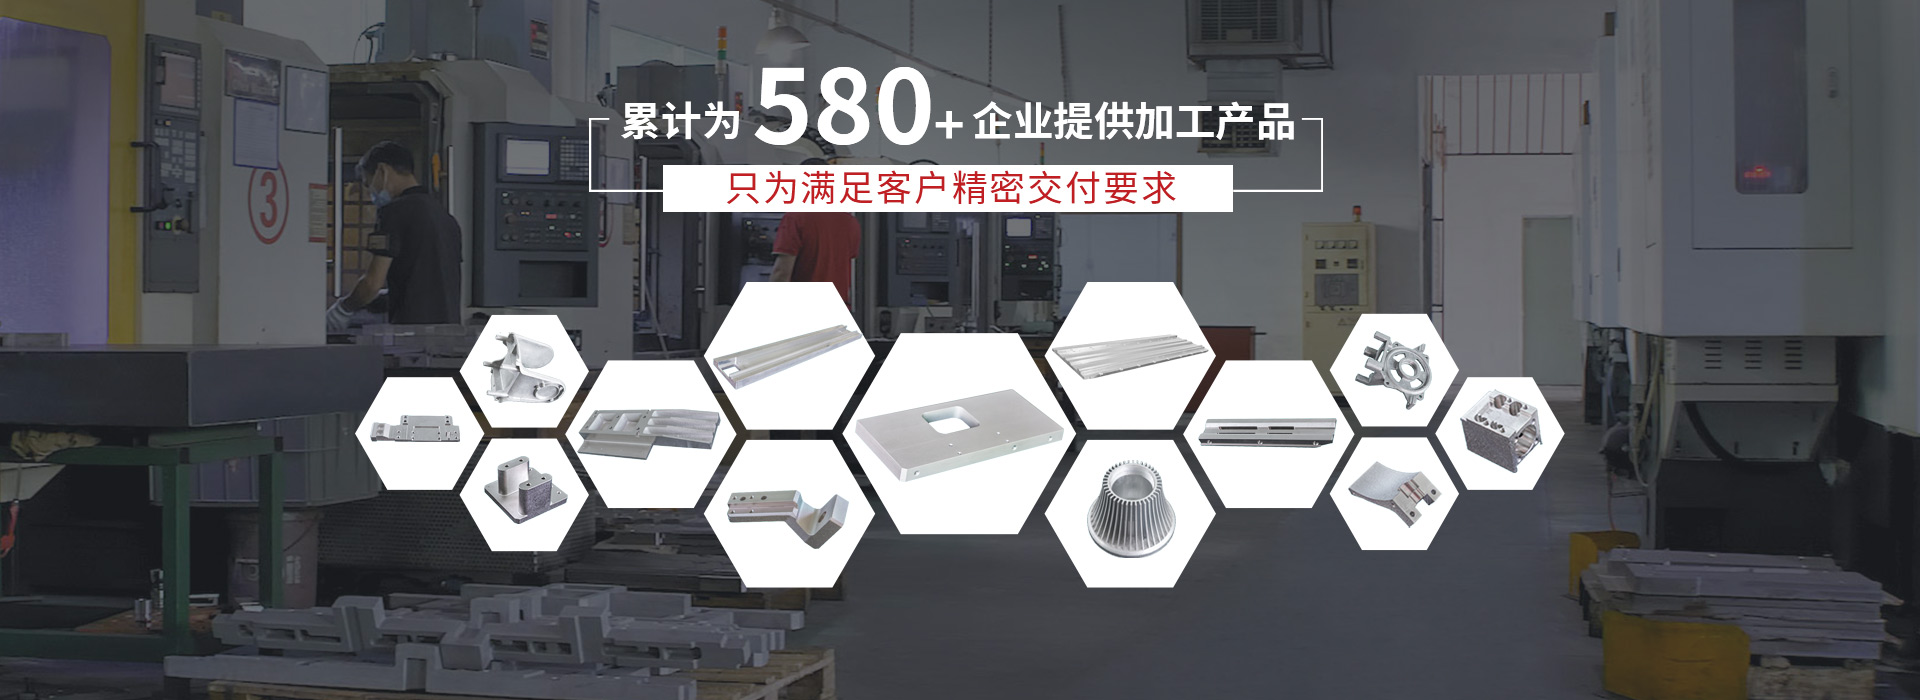 樂麒騰-累計為580+企業提供加工產品